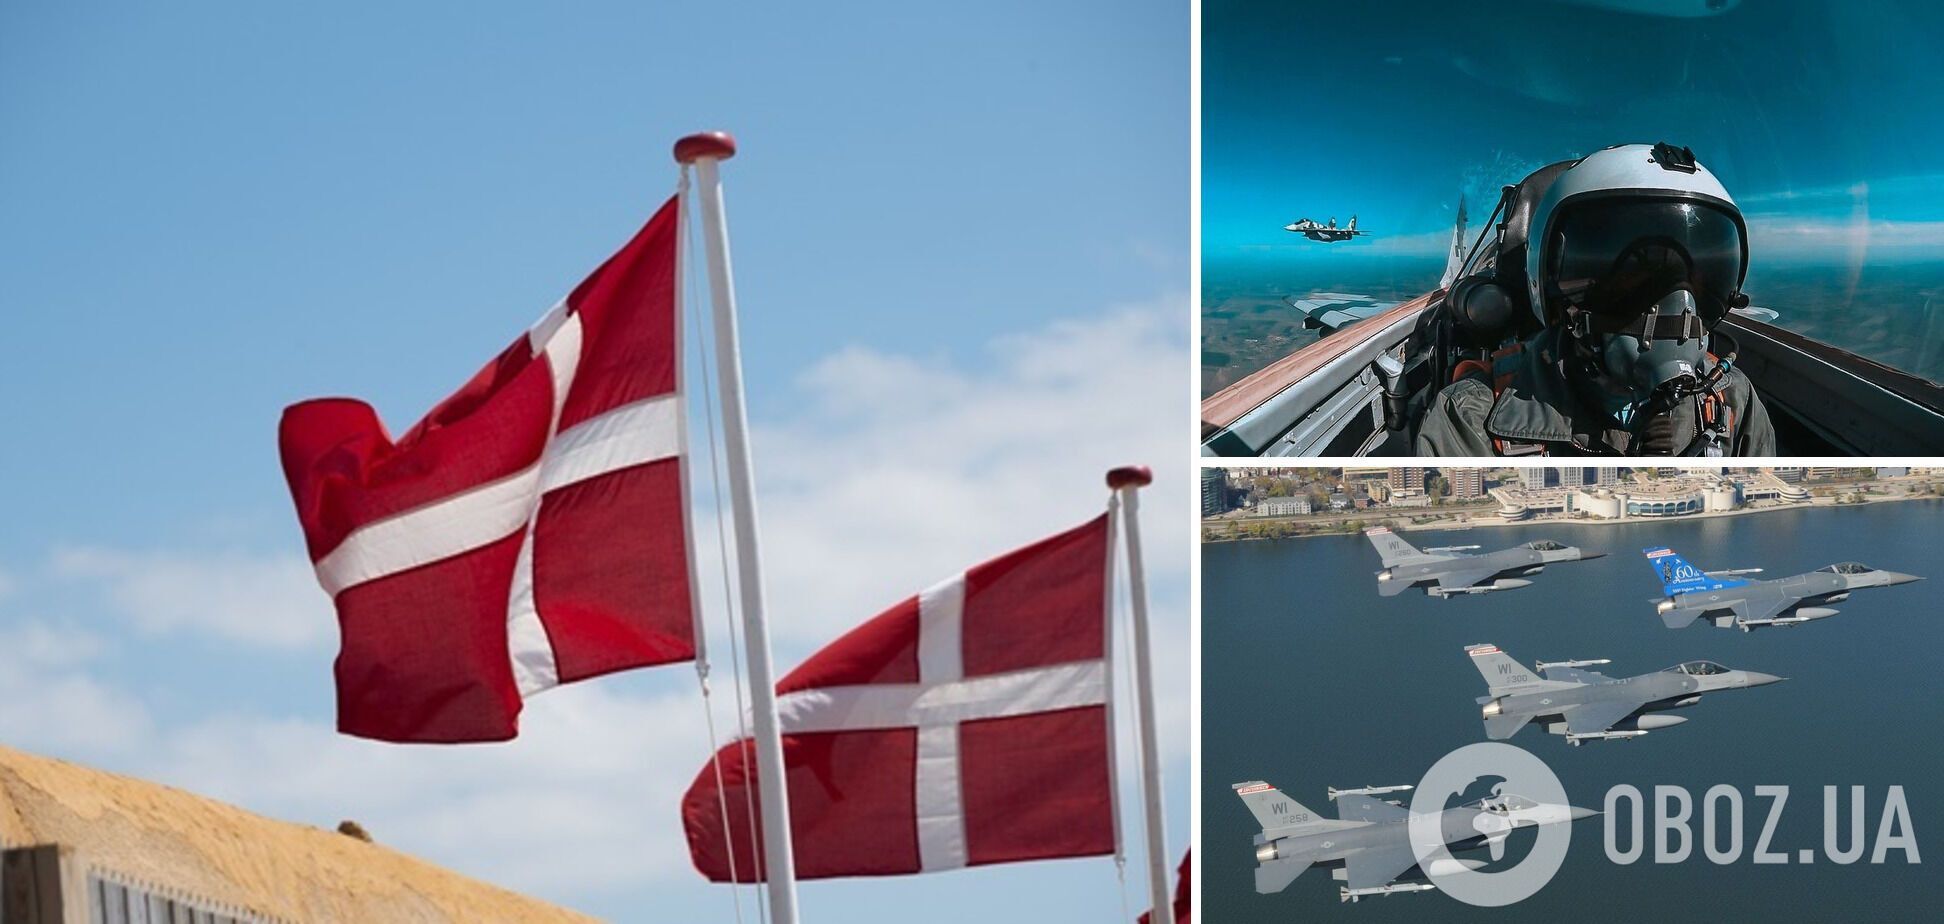 Дания начала обучение украинских пилотов на истребителях F-16: подробности